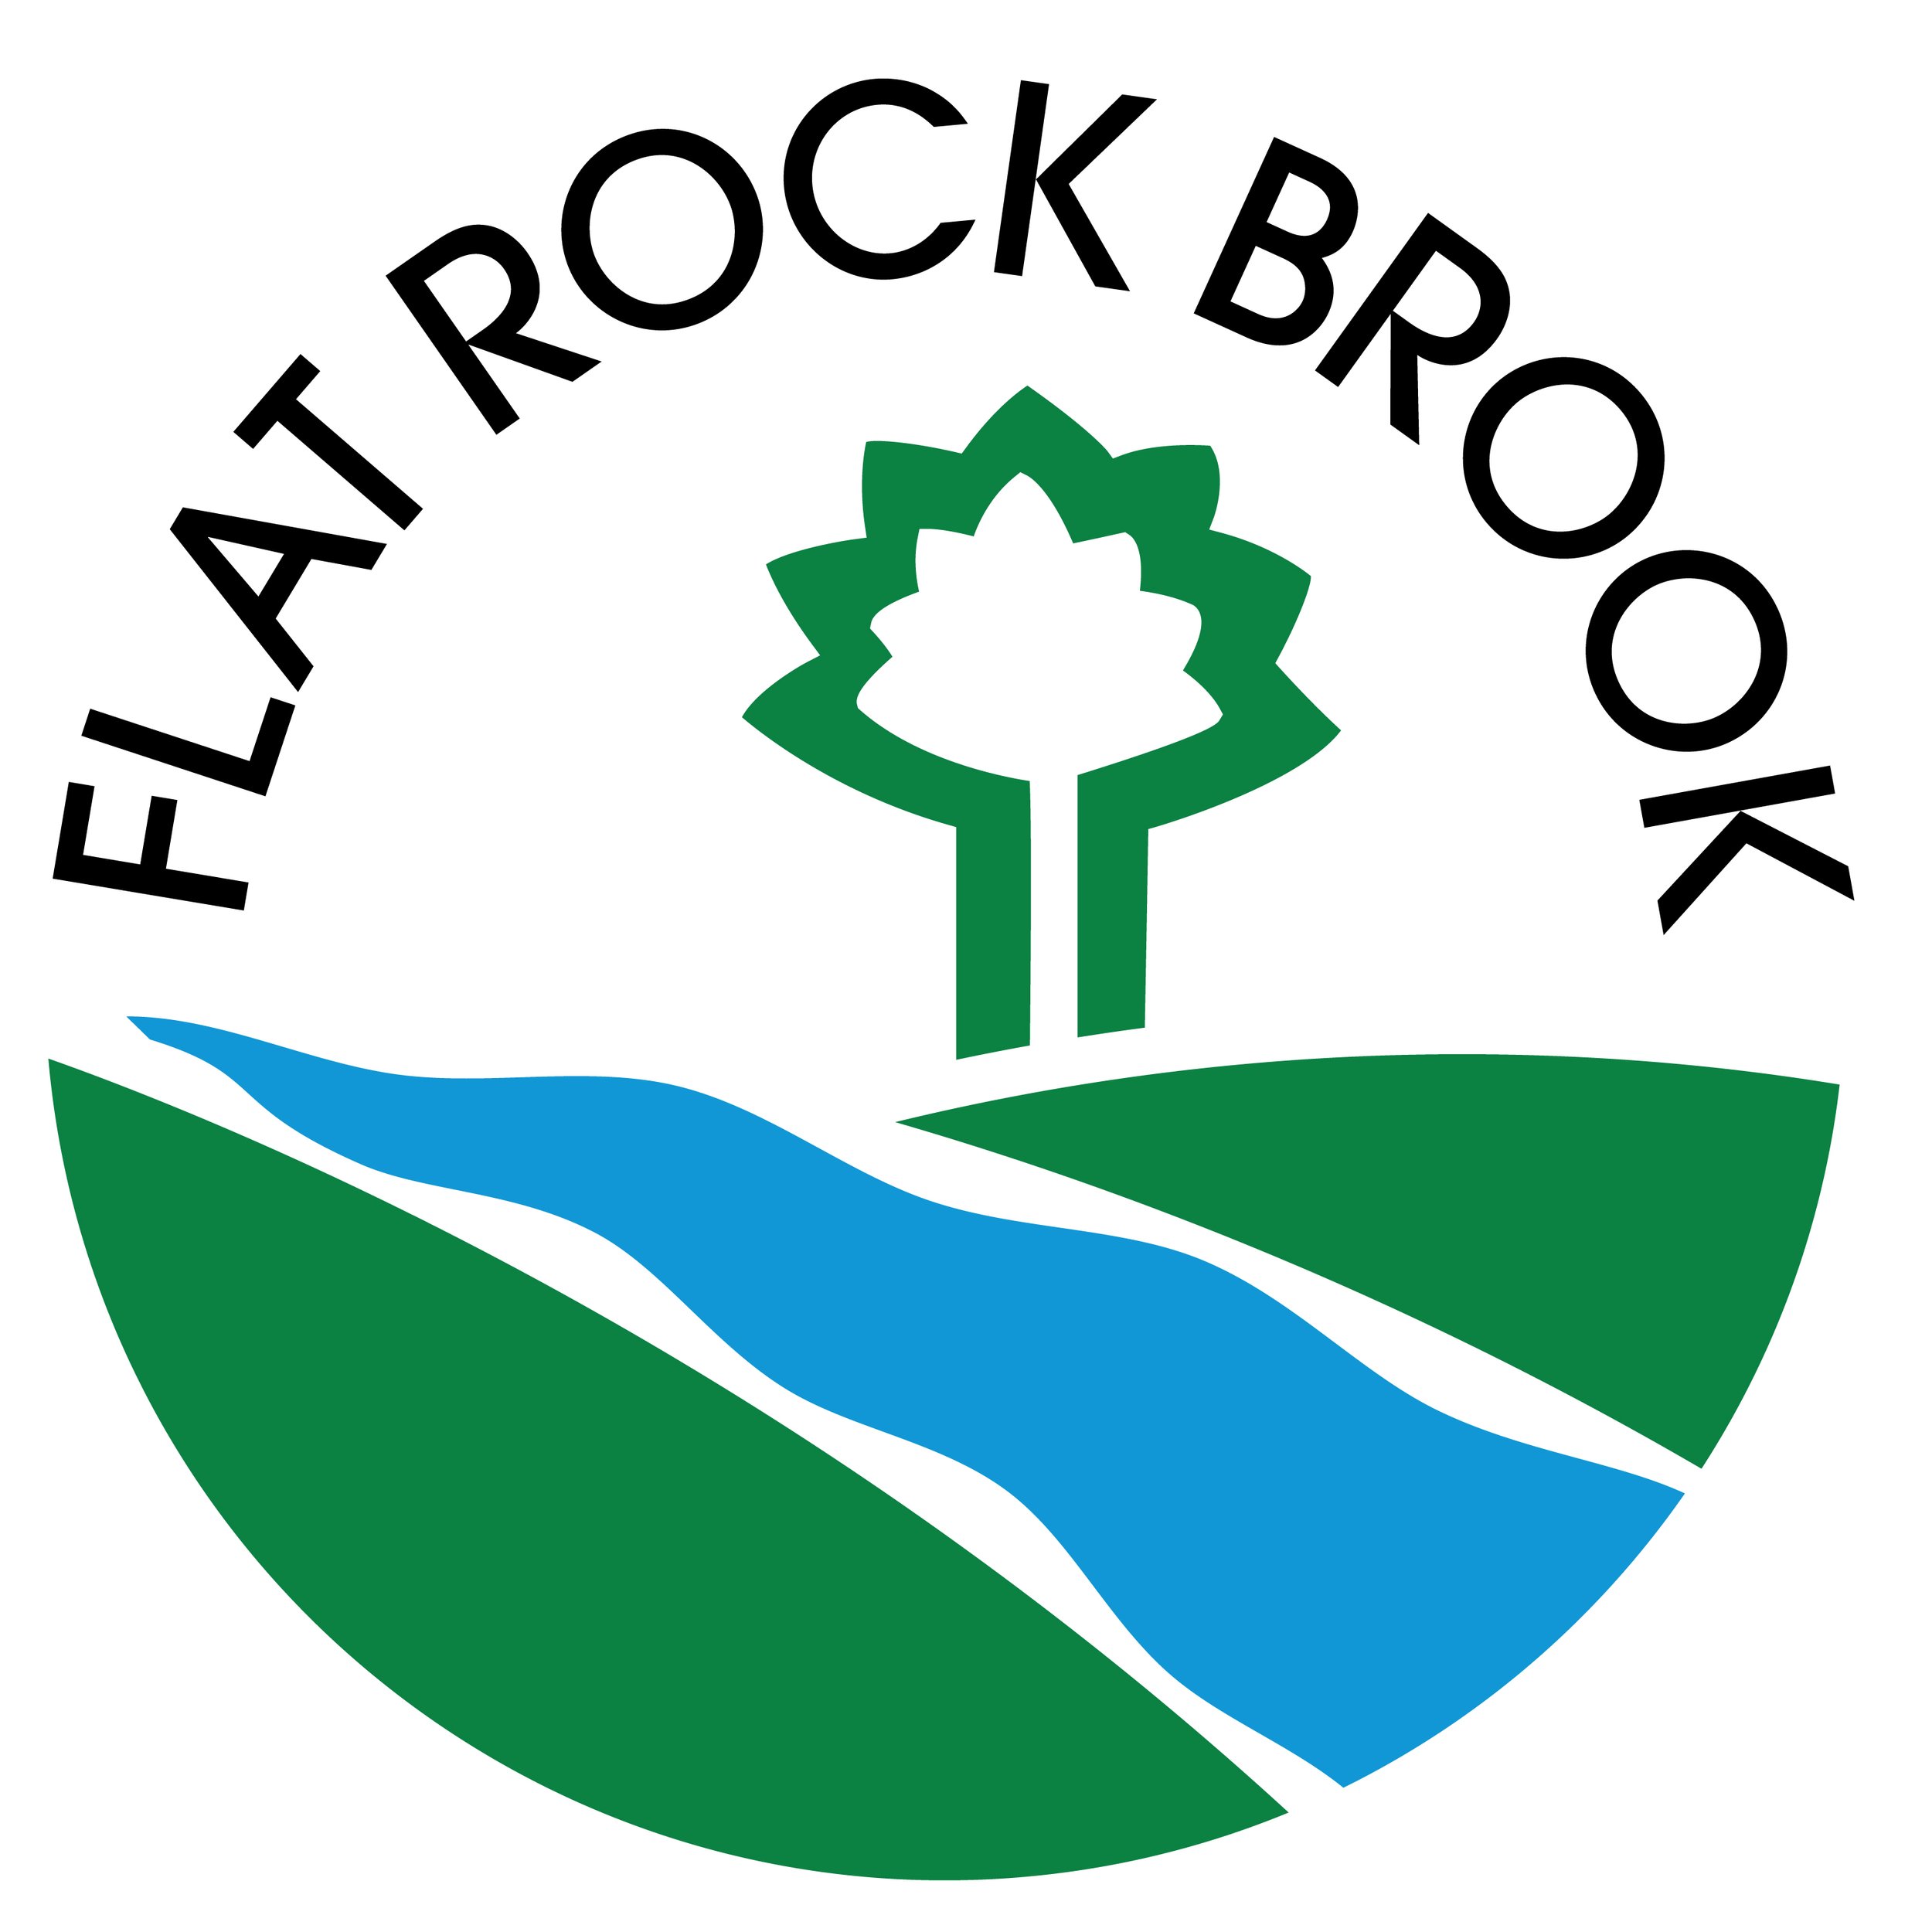 Rockbrook Logo Water Bottle